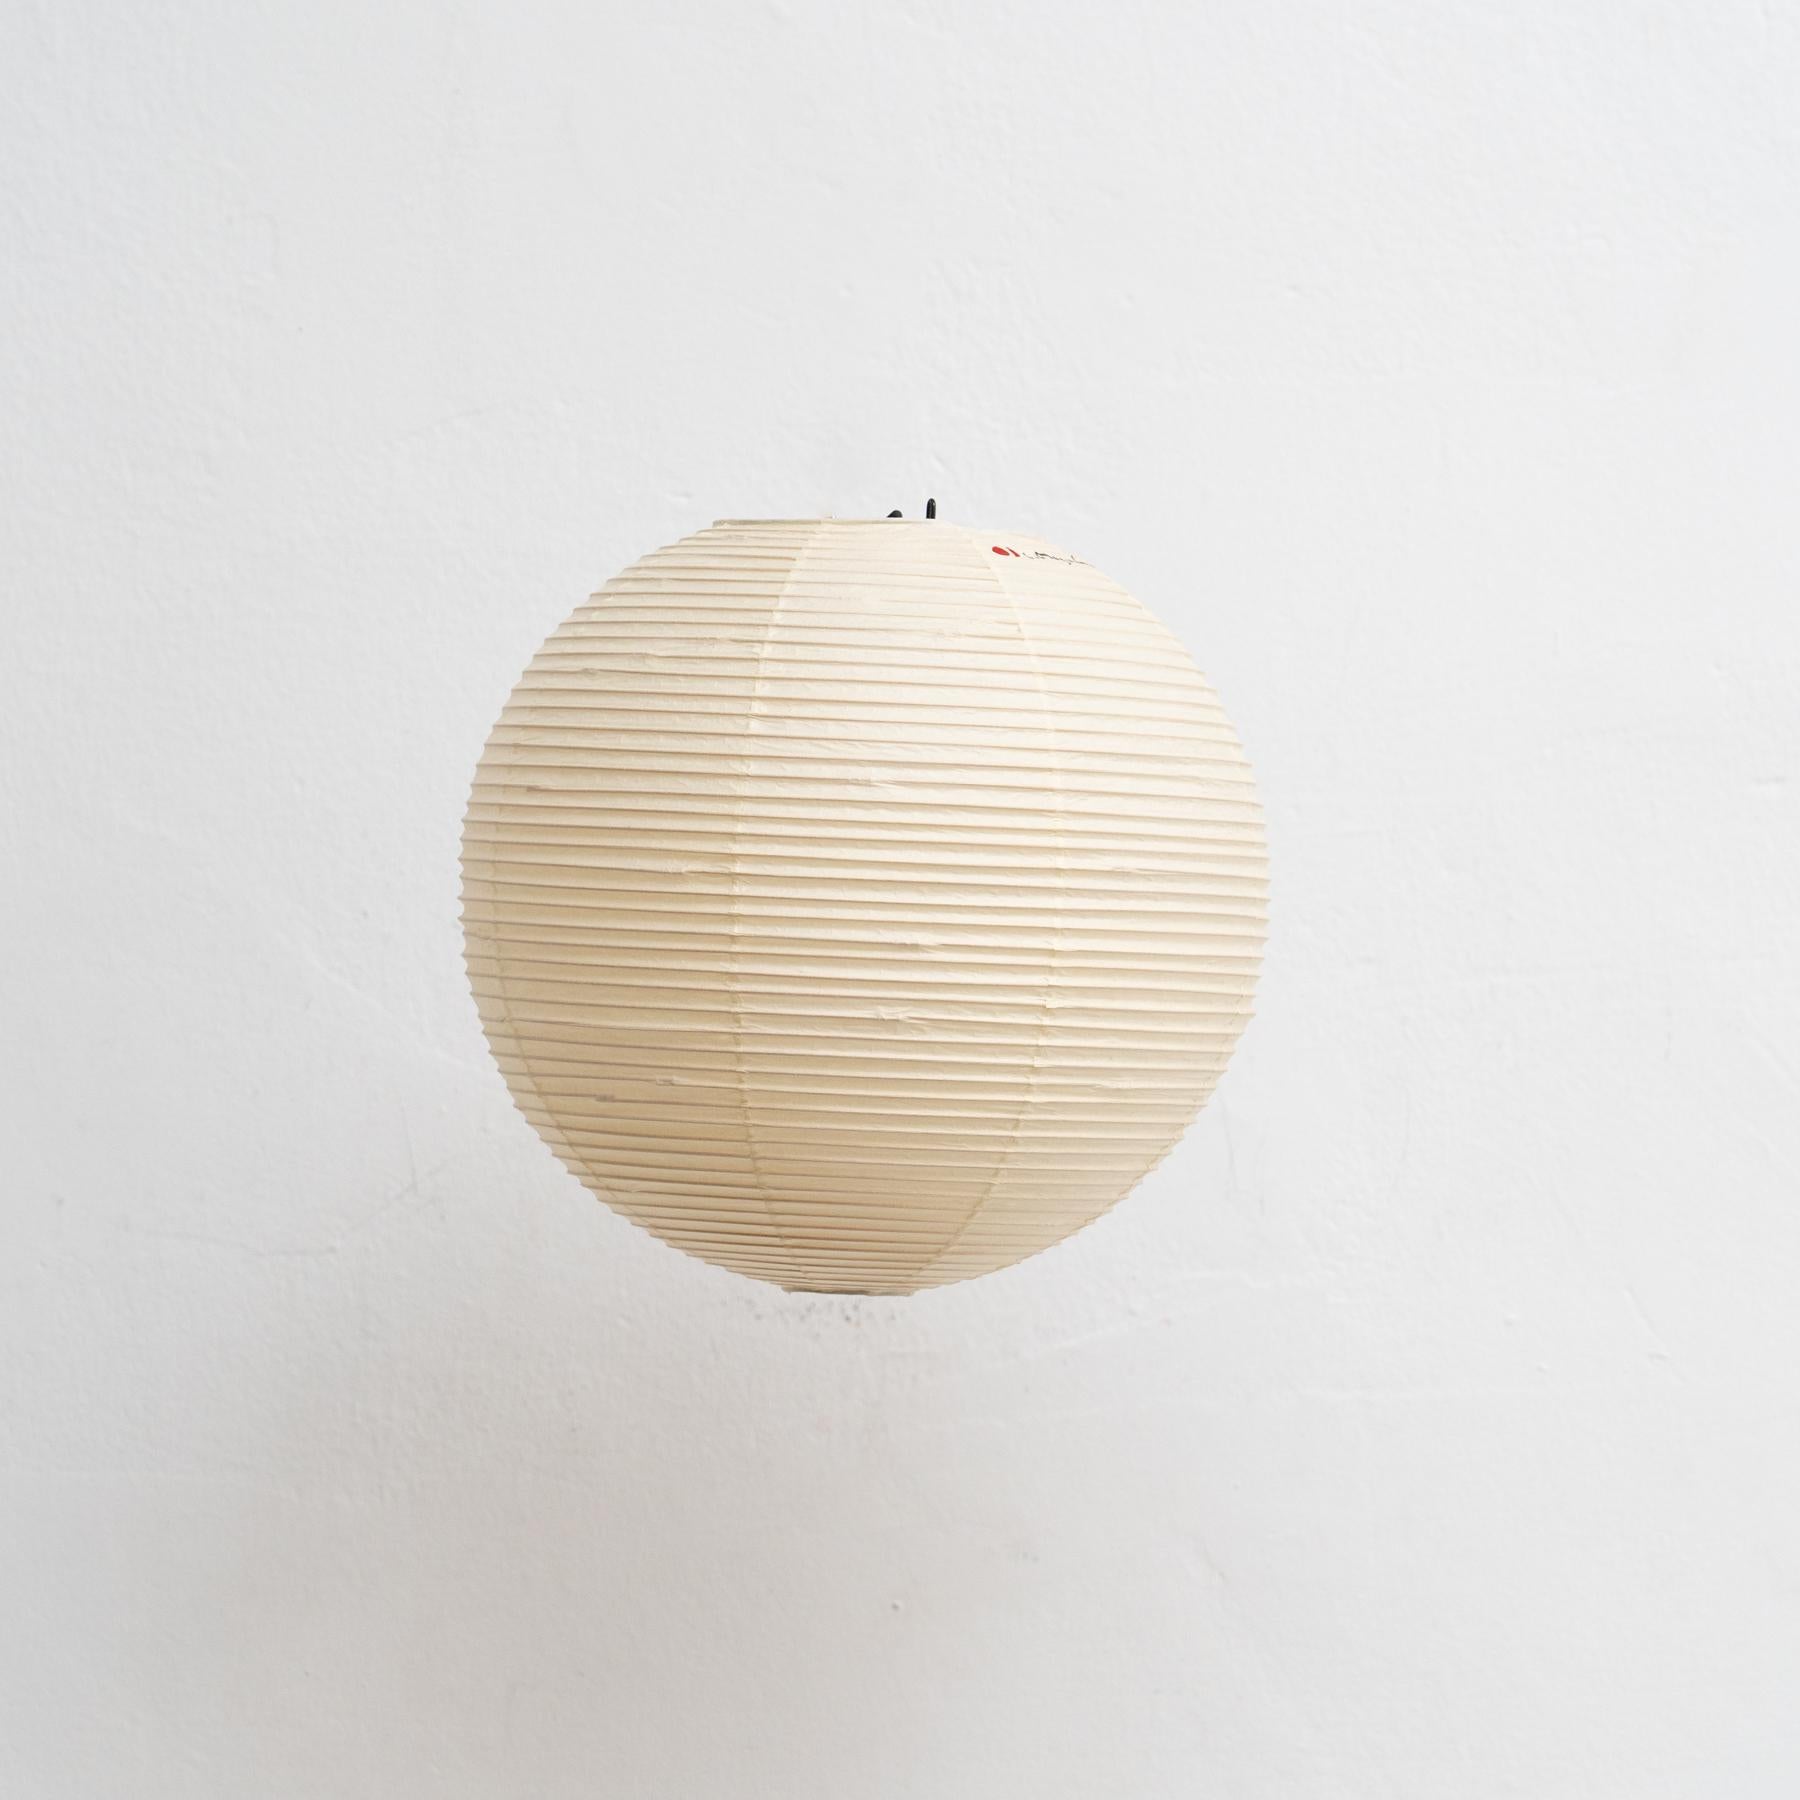 Lampe suspendue modèle 30A conçue par Isamu Noguchi.

Fabriqué par Ozeki & Company Ltd. (Japon.)

Structure en nervures de bambou recouverte de papier washi fabriqué selon les procédures traditionnelles.

En état d'origine, avec une usure mineure